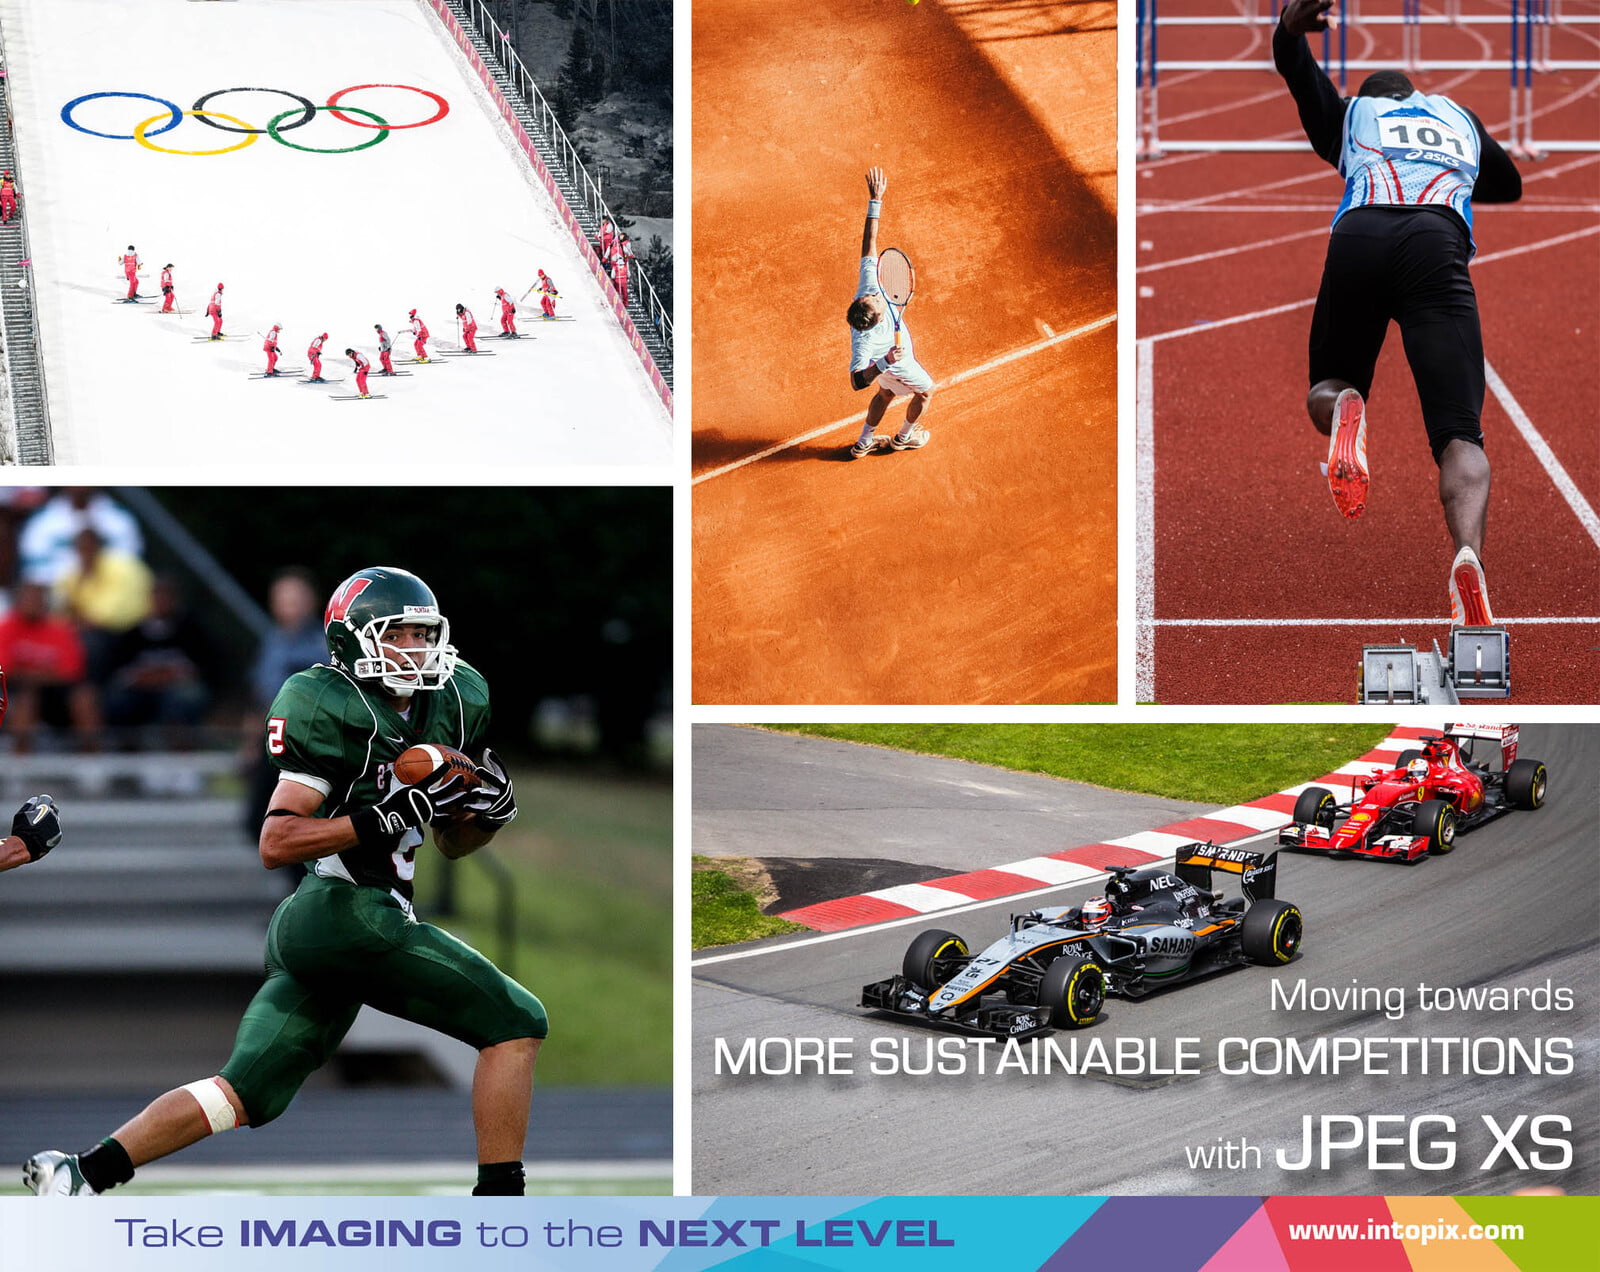 JPEG XS를 사용한 원격 제작을 통해 보다 지속 가능한 스포츠 대회 개최 가능